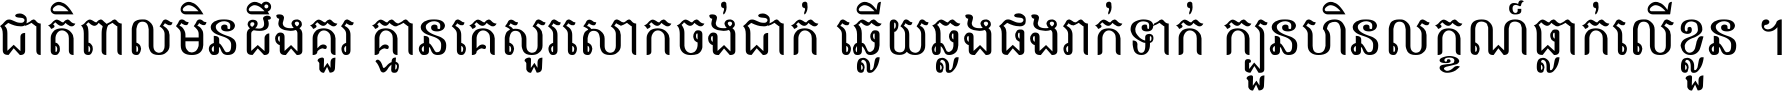 Khmer Chhay Text 7